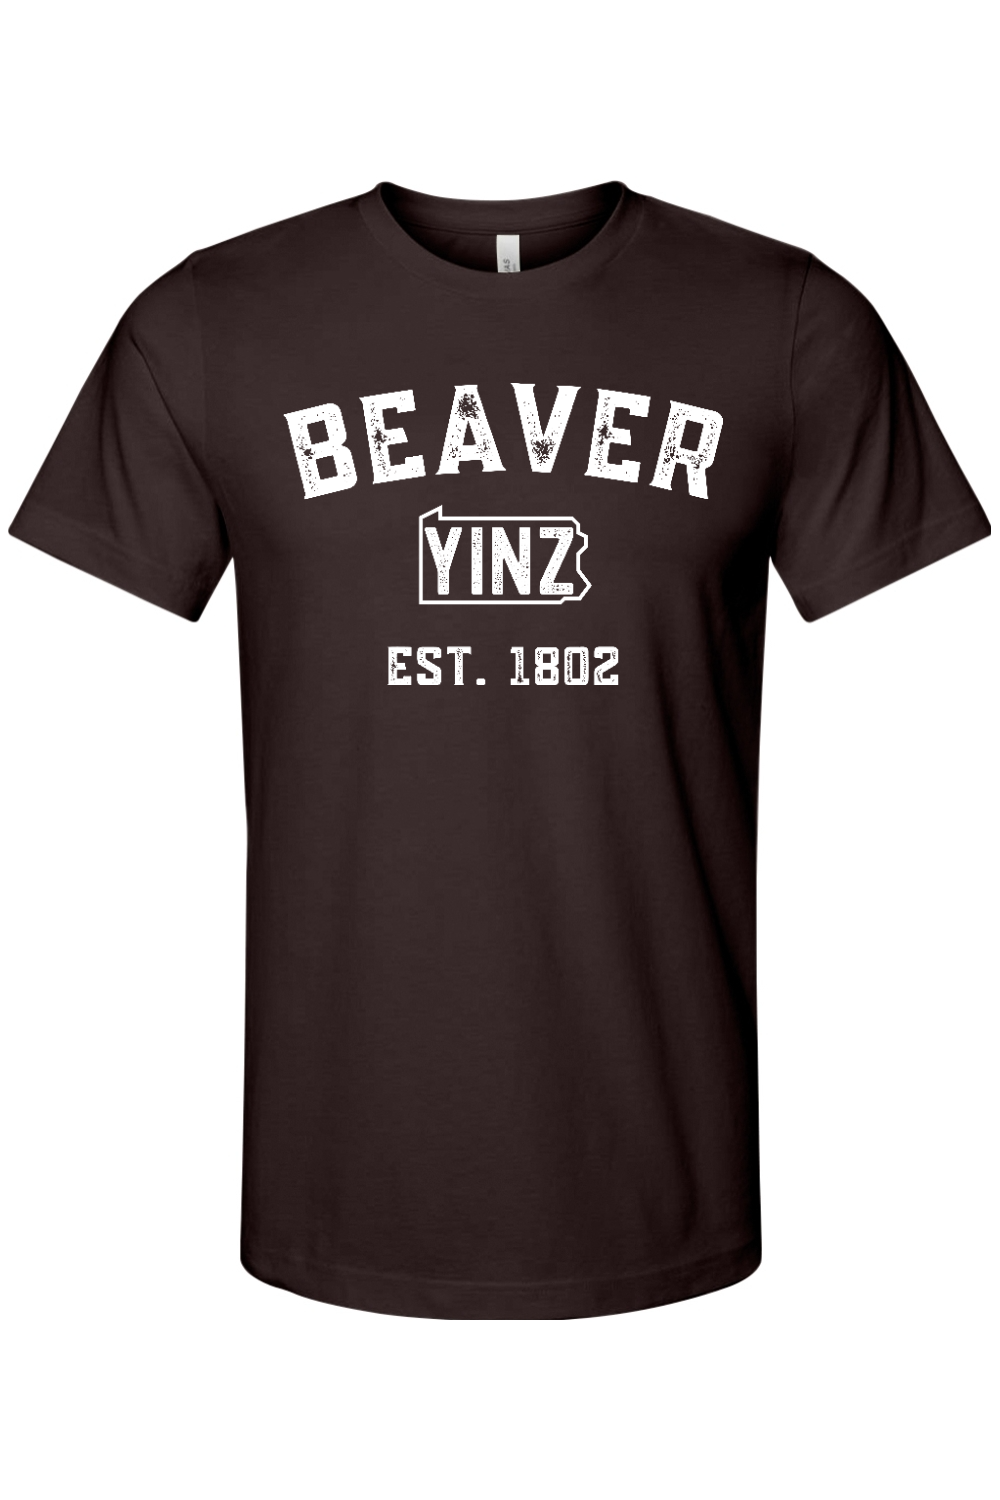 Beaver Yinzylvania - Yinzylvania